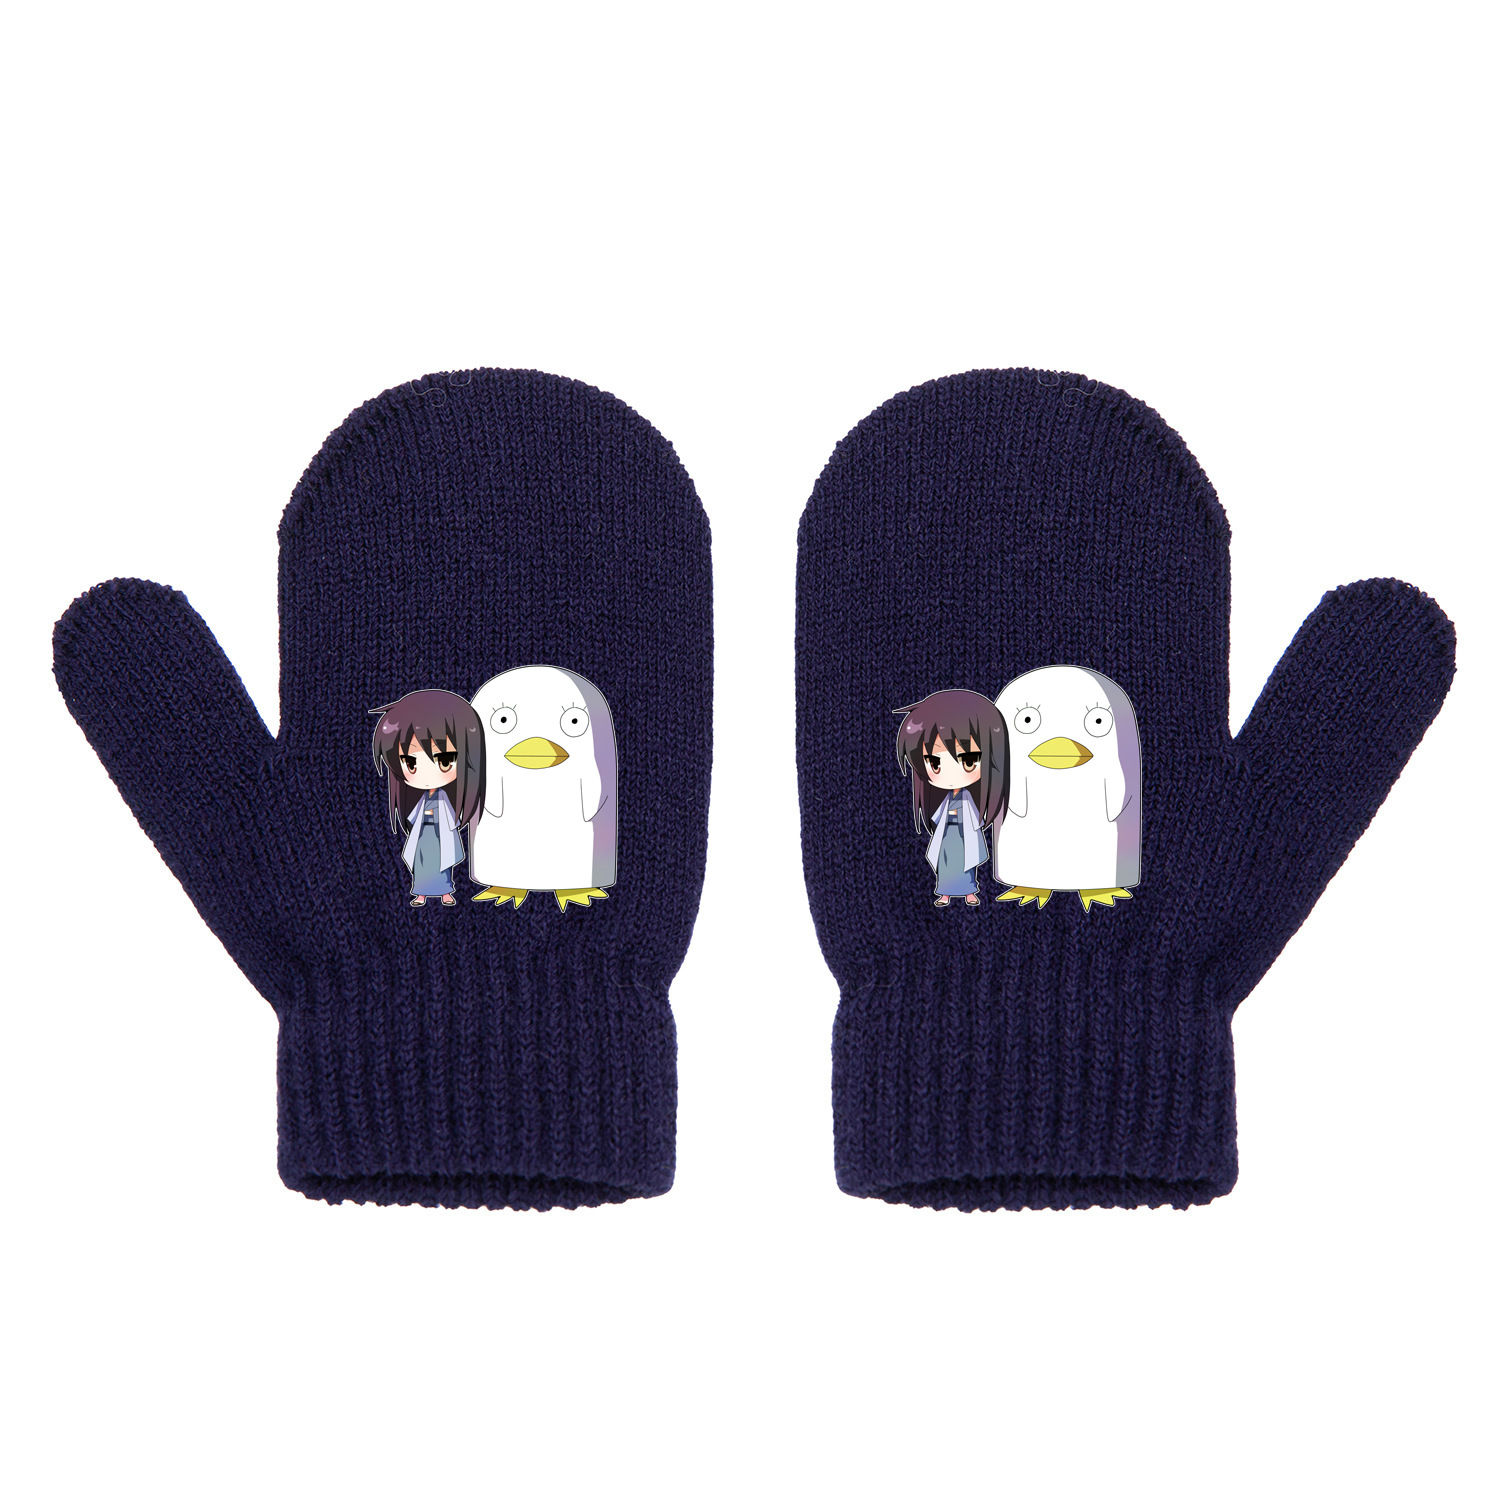 Gintama anime glove